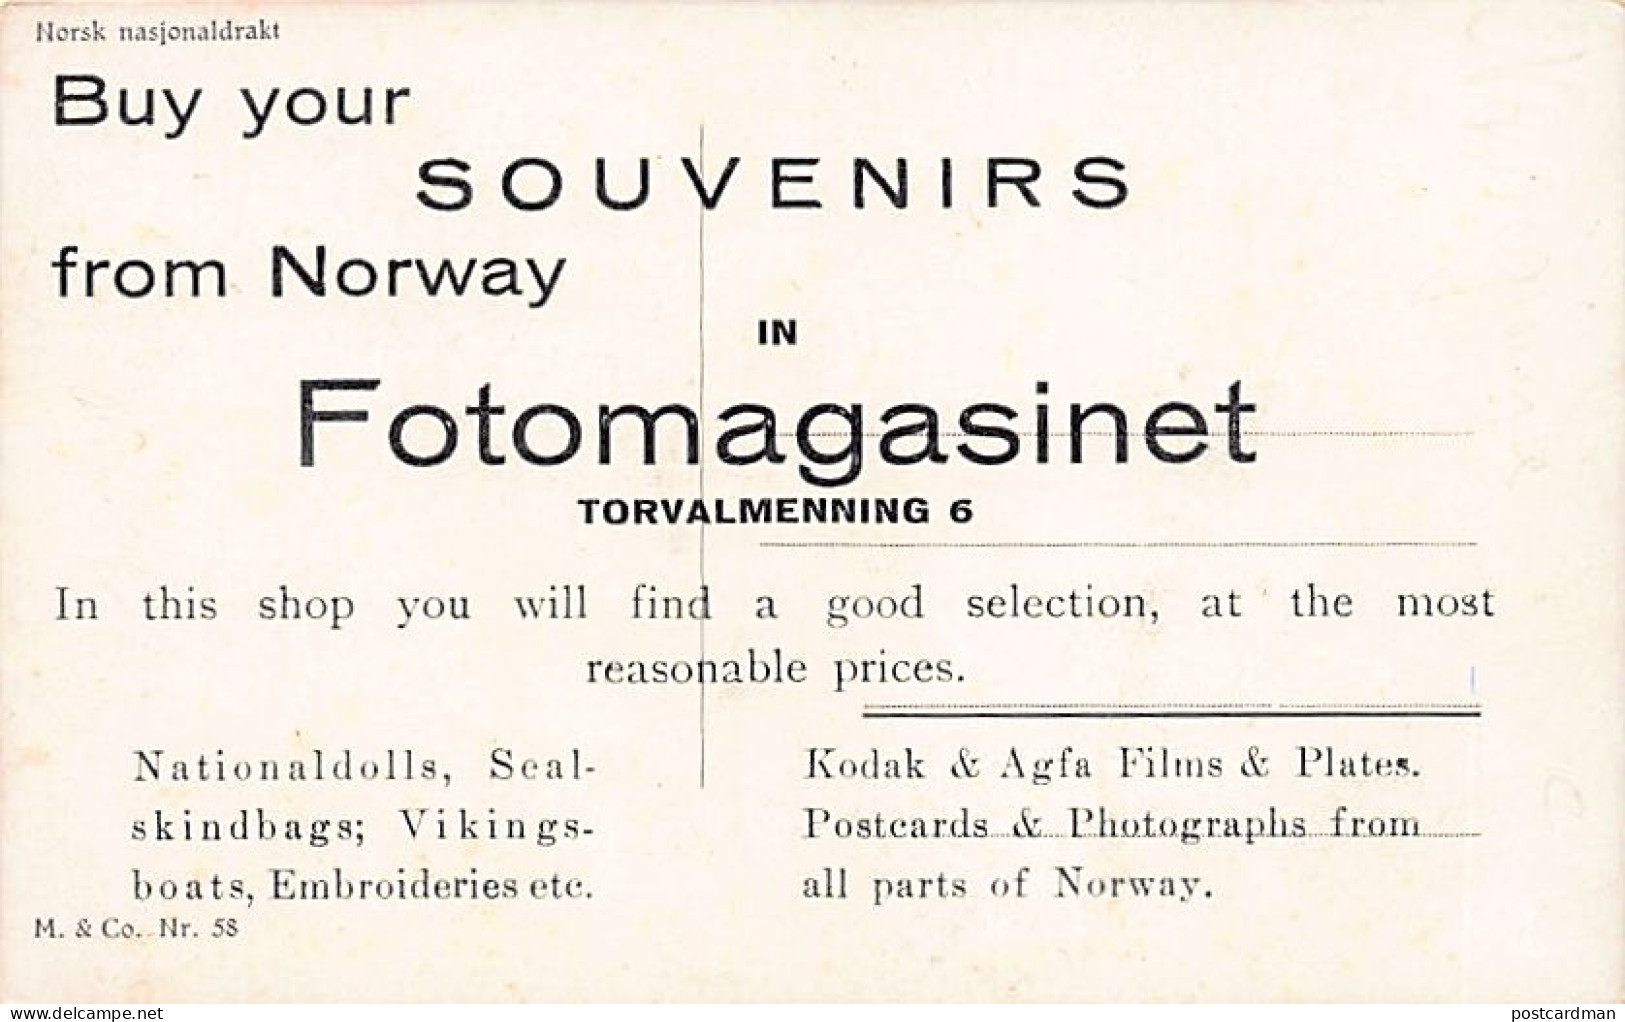 Norway - BERGEN - Fotomagasinet, Torvalmenning 6 - Publ. M. & Co. 58 - Norvegia